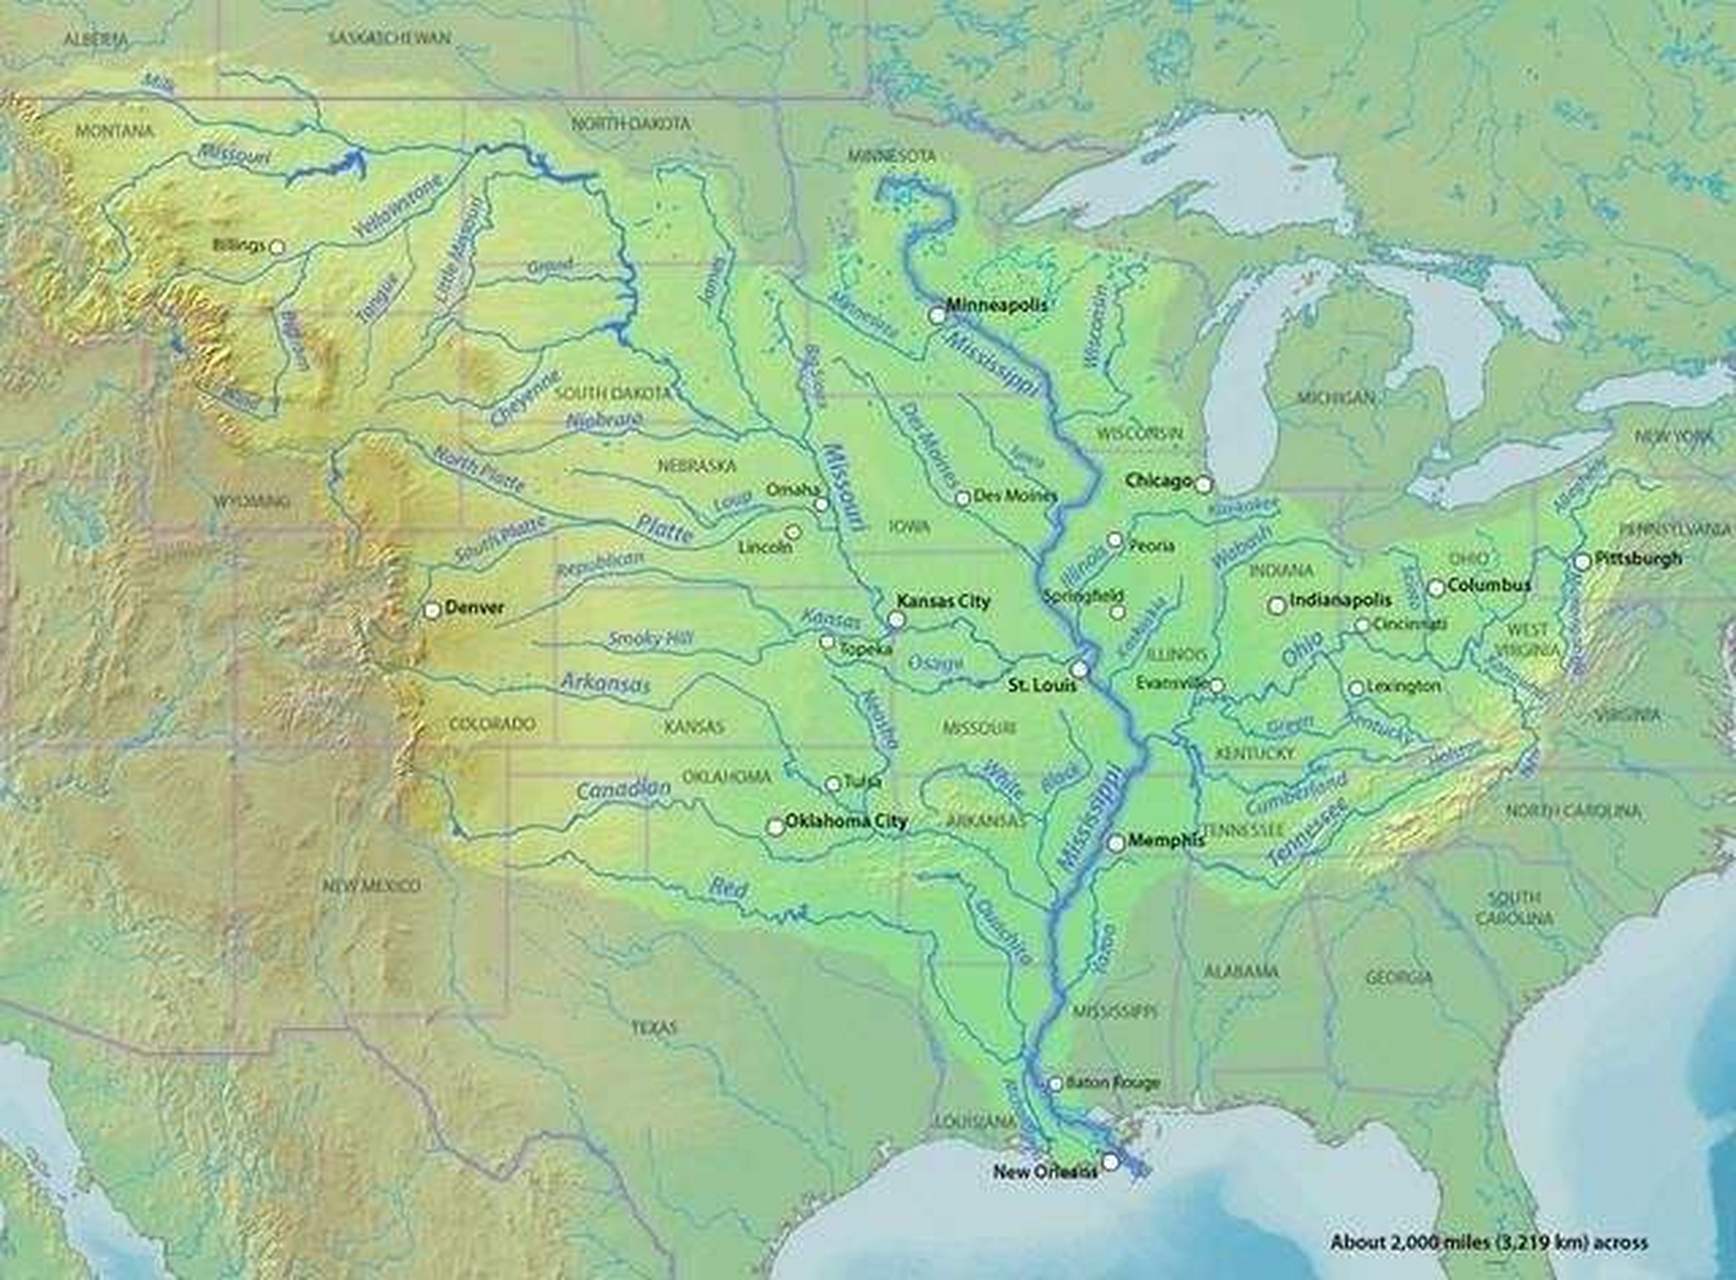 美国最长最大的一条河流叫密西西比河,拥有众水之父的美誉